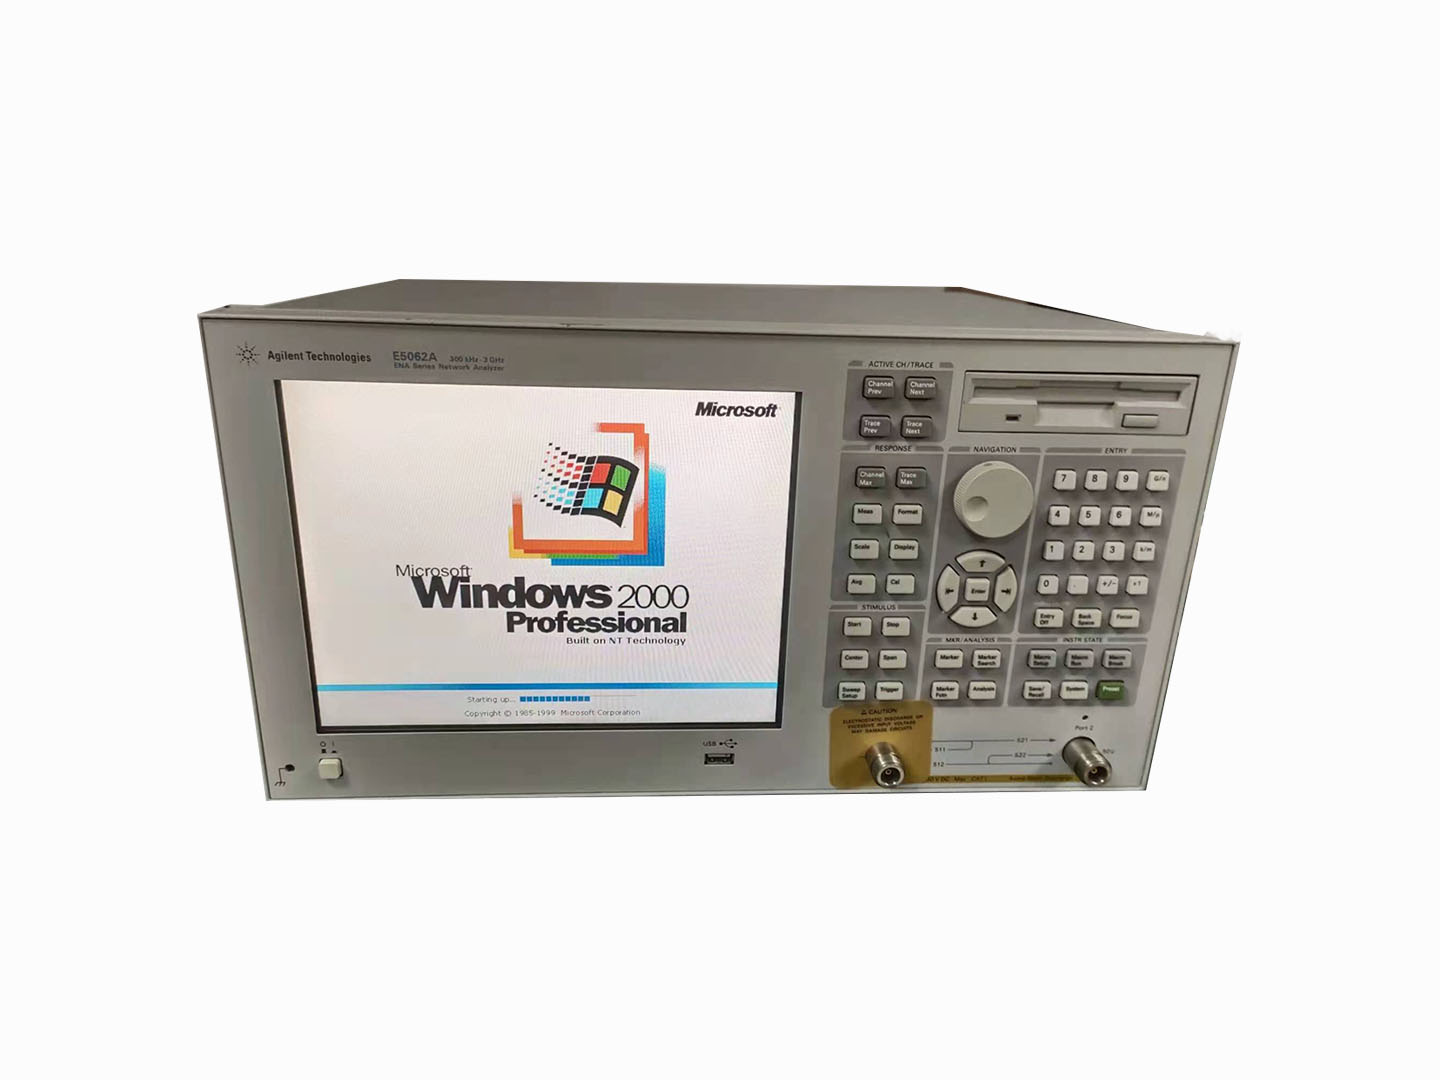 E5062A 网络分析仪